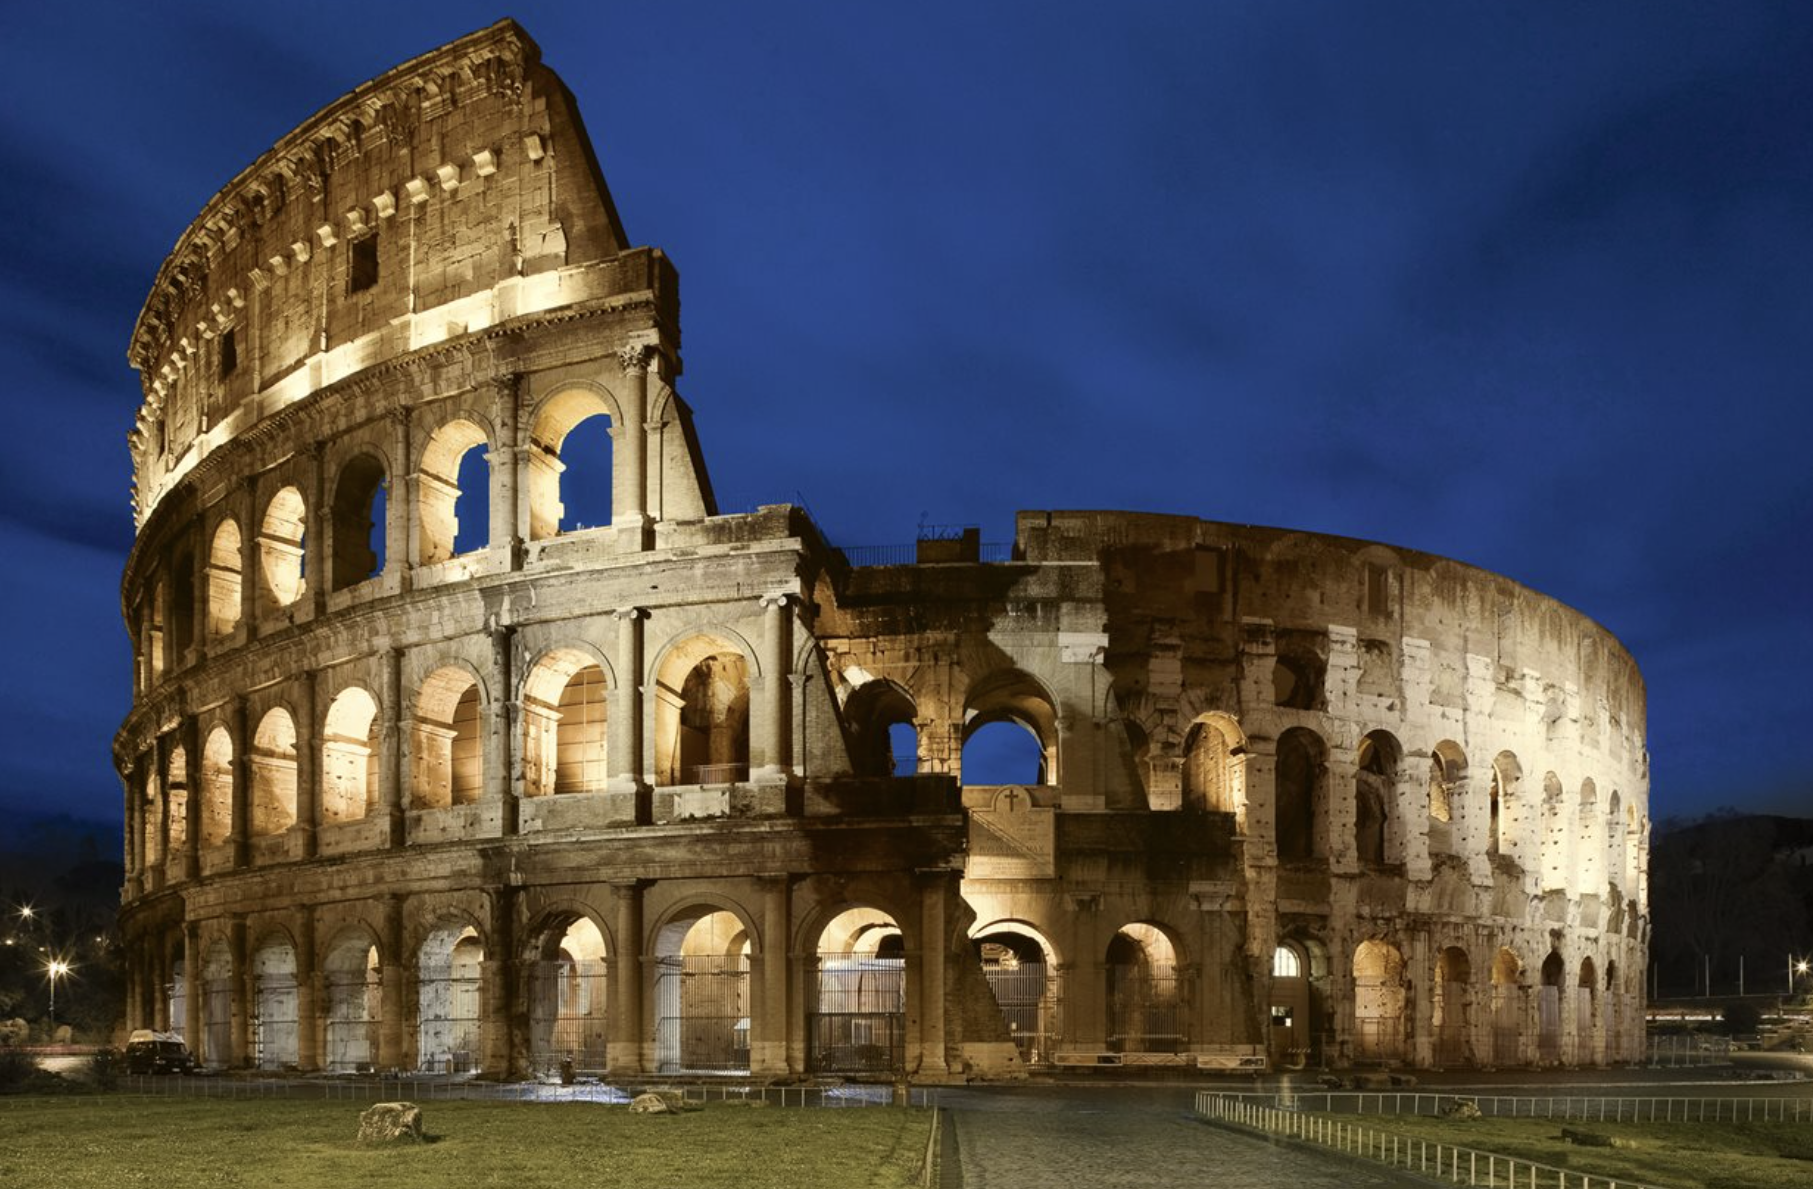 Turista que talló nombres en el Coliseo de Roma se disculpa y admite desconocimiento de su antigüedad